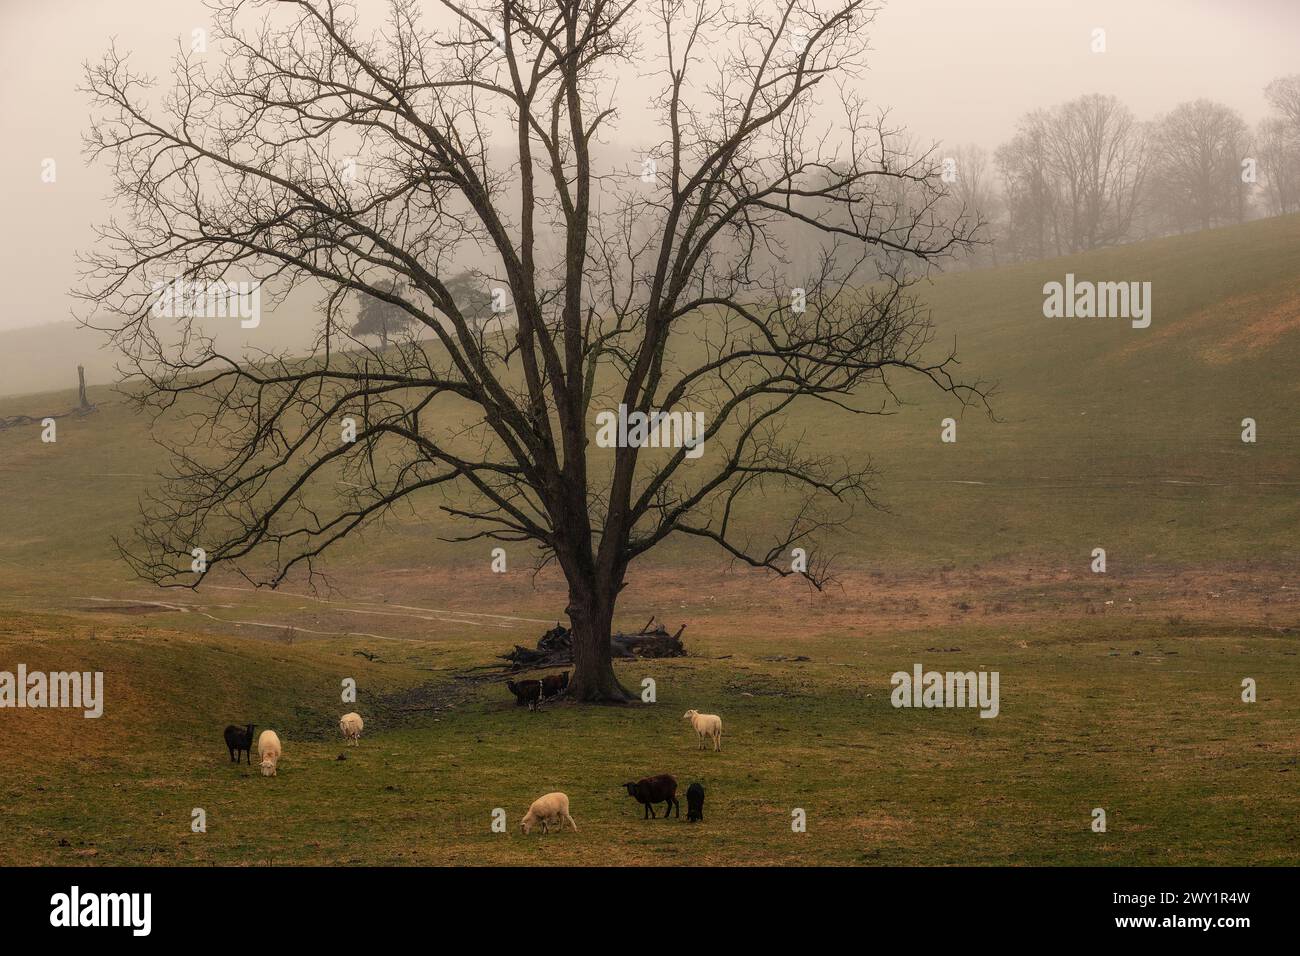 Le pecore pascolano in un pascolo sotto un albero di quercia con il tempo piovoso in questo paesaggio rurale della Virginia. Foto Stock